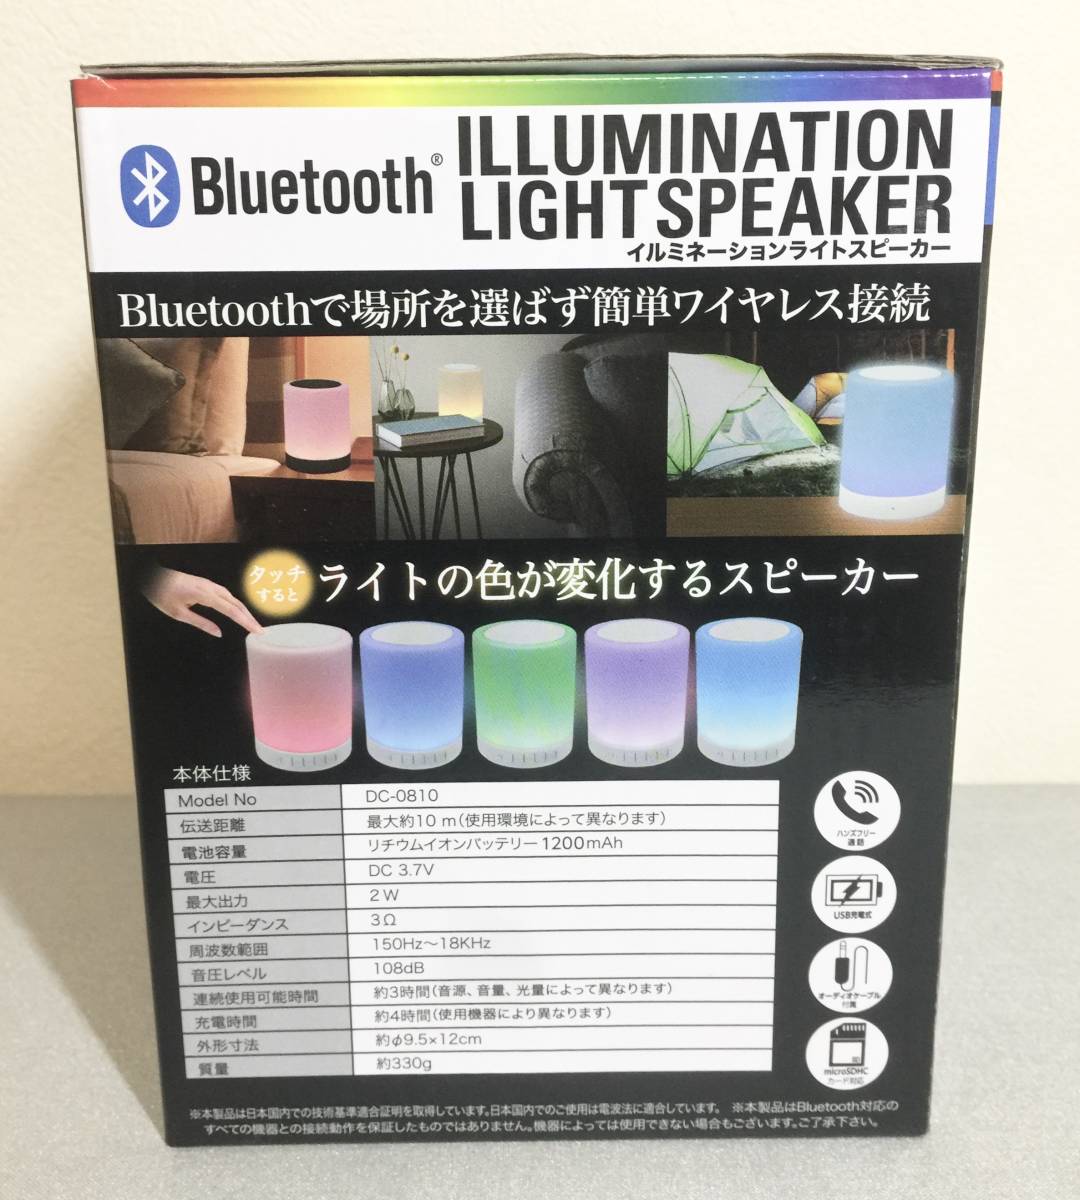 Bluetoothイルミネーションライトスピーカー:ブラック【新品未開封】_画像3